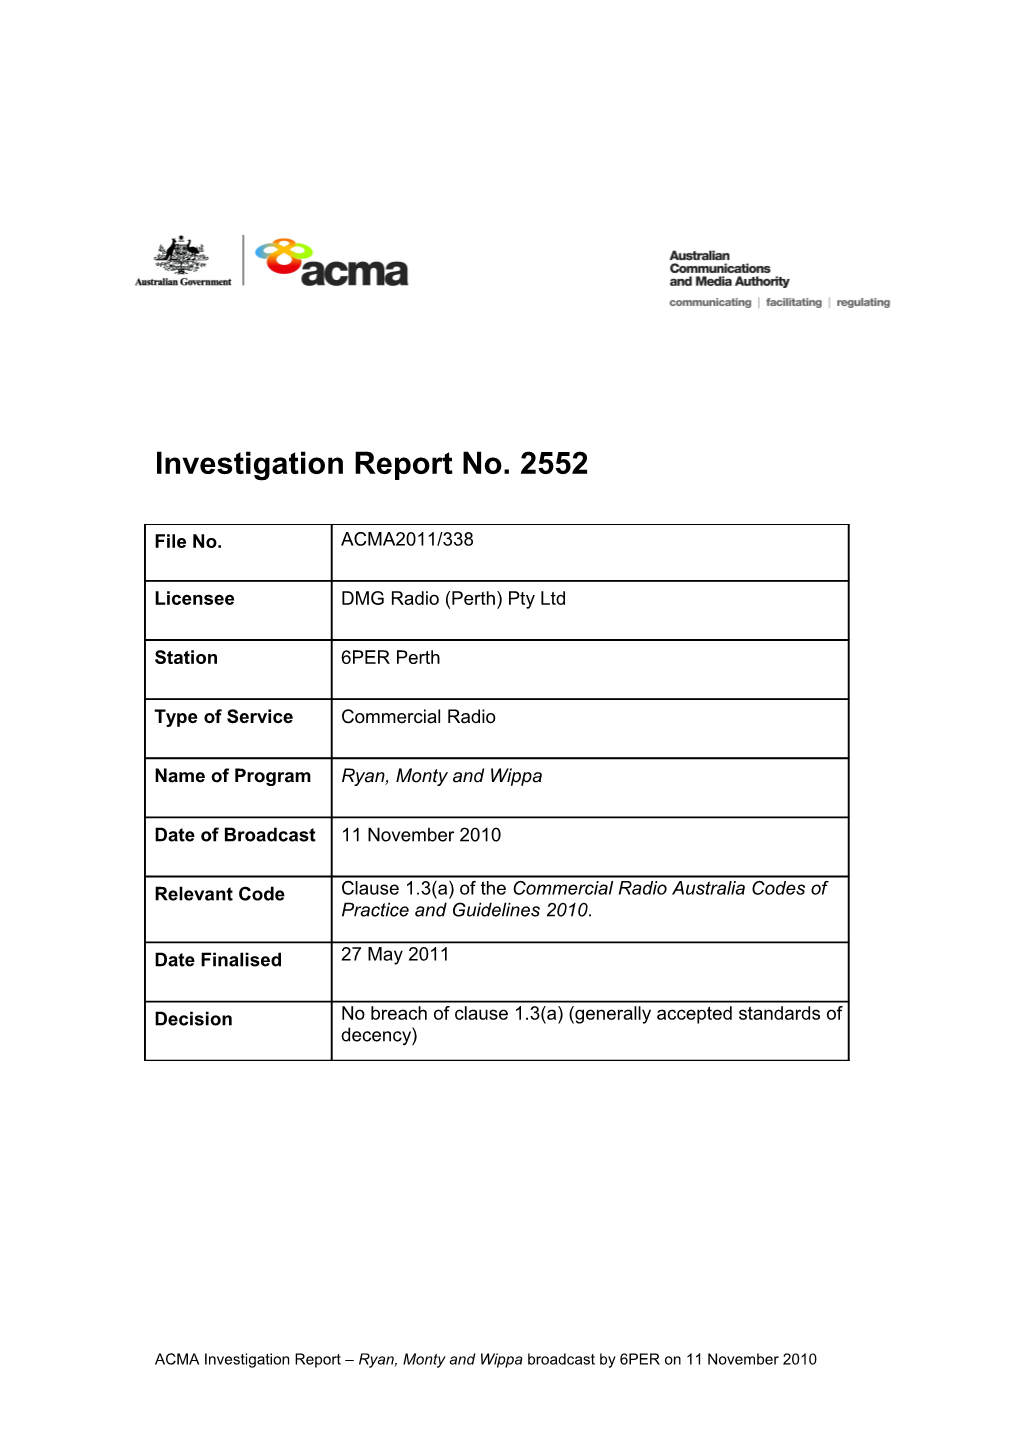 6PER Perth - ACMA Investigation Report 2552